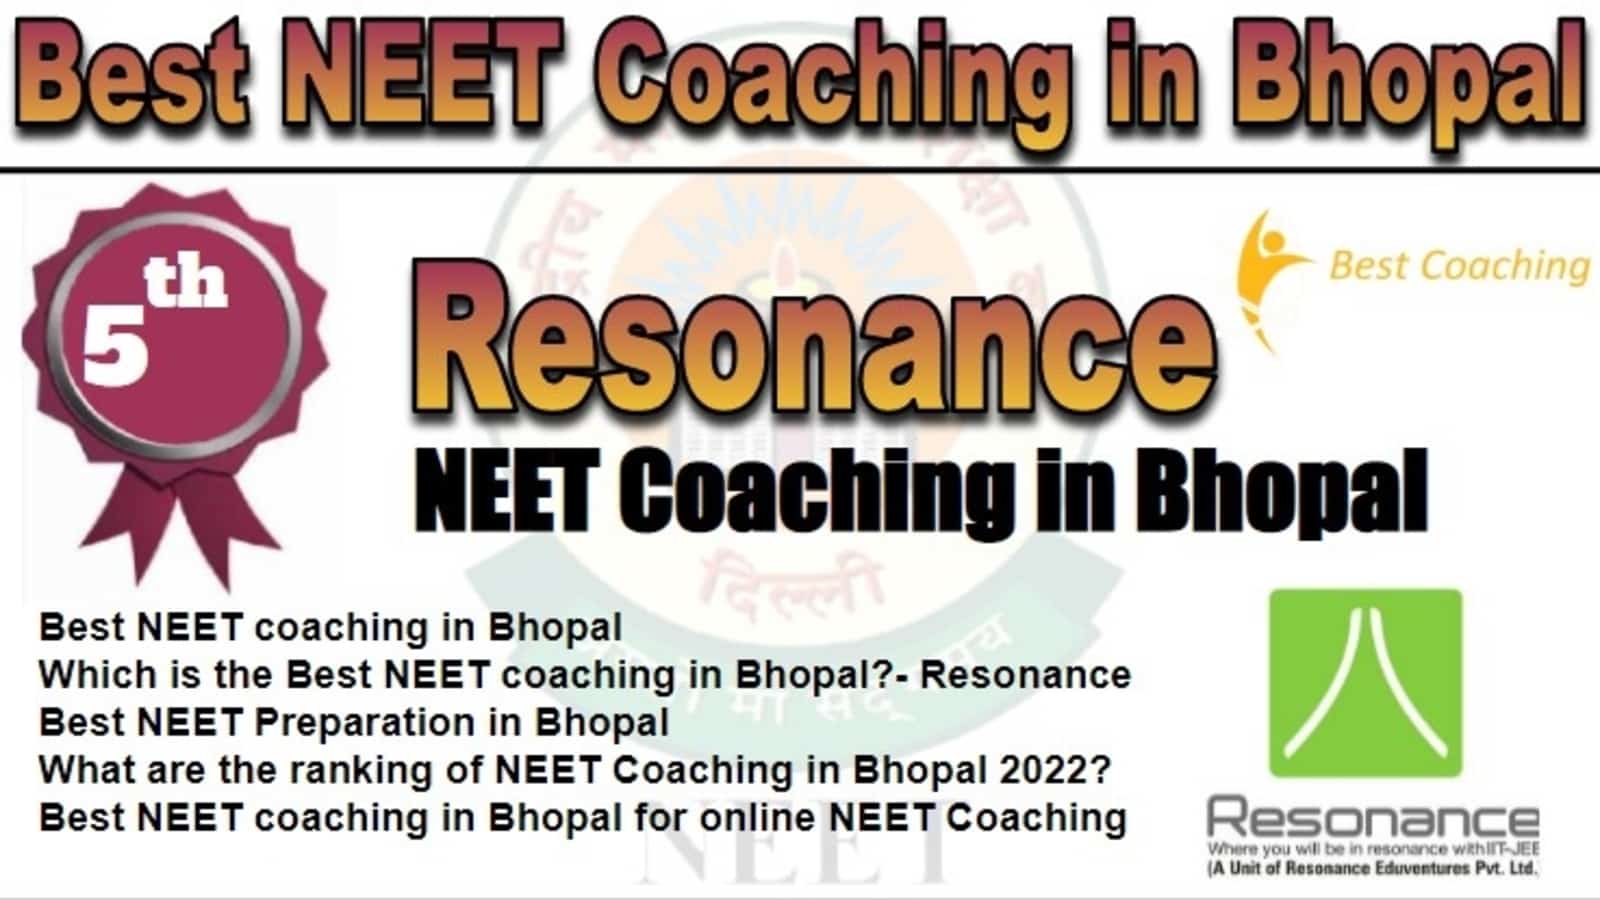 Rank 5 Best NEET Coaching in Bhopal